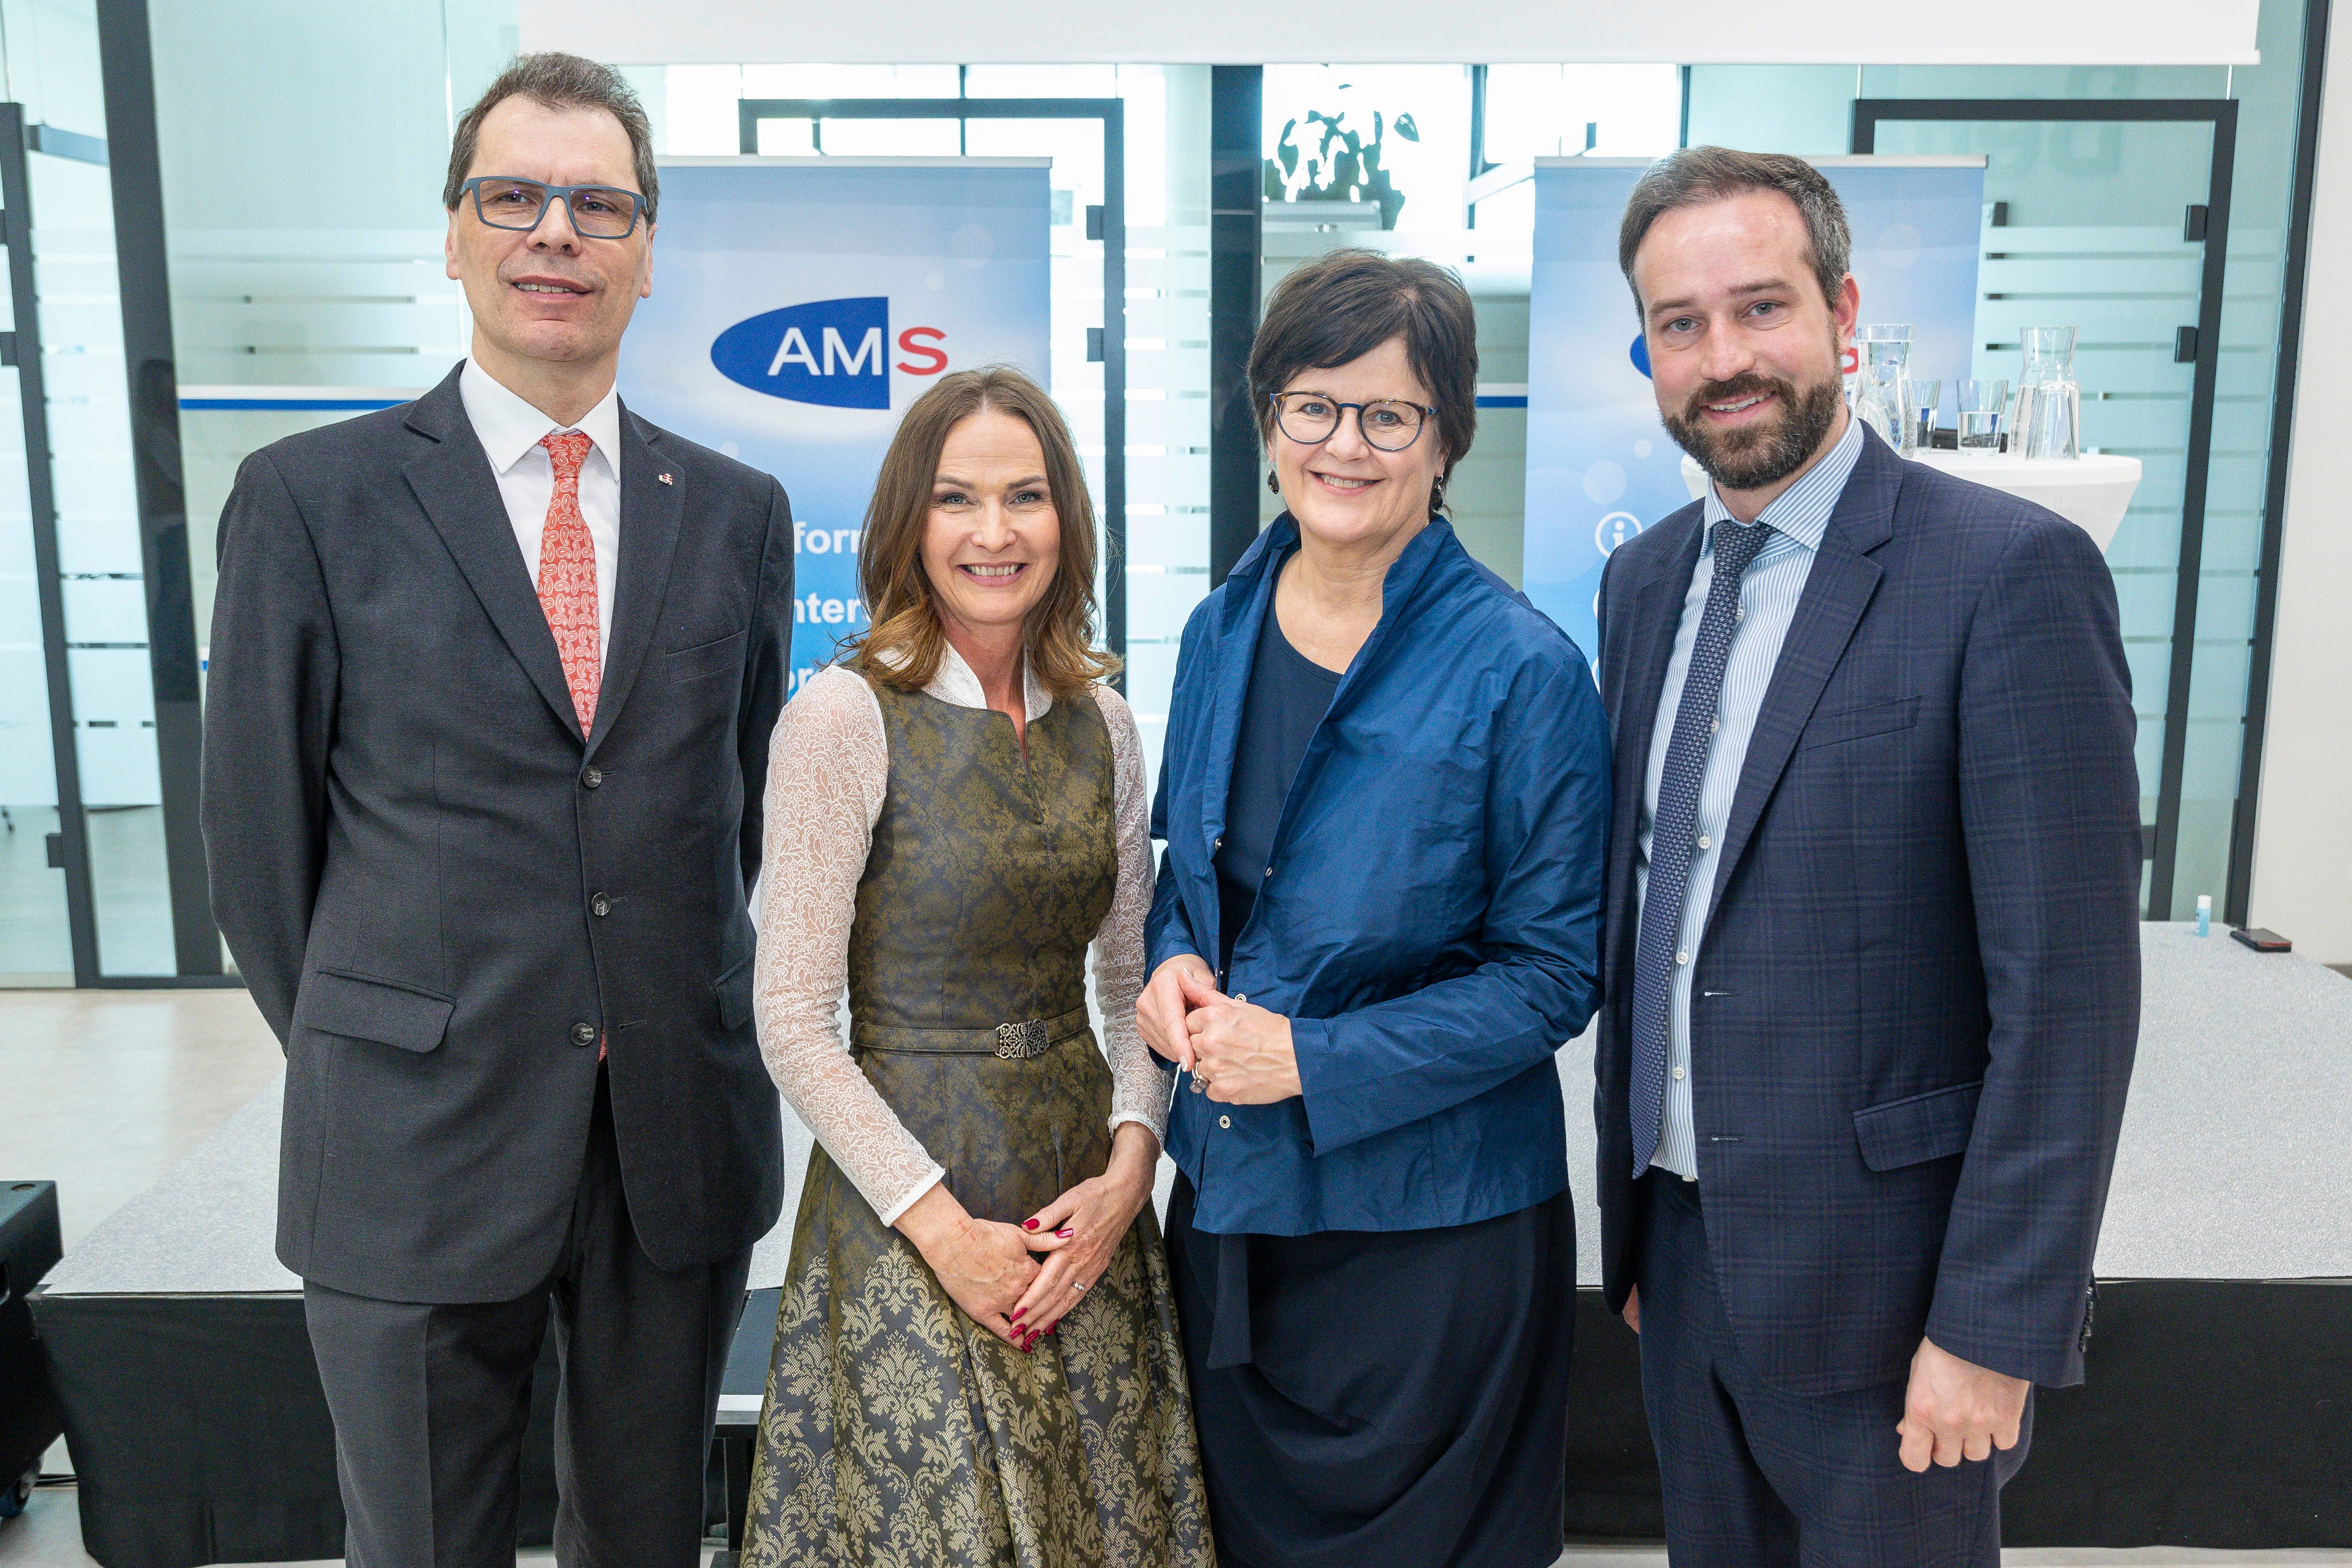 Ehrengäste bei der Eröffnungsfeier der AMS Regionalgeschäftsstelle Salzburg-Stadt